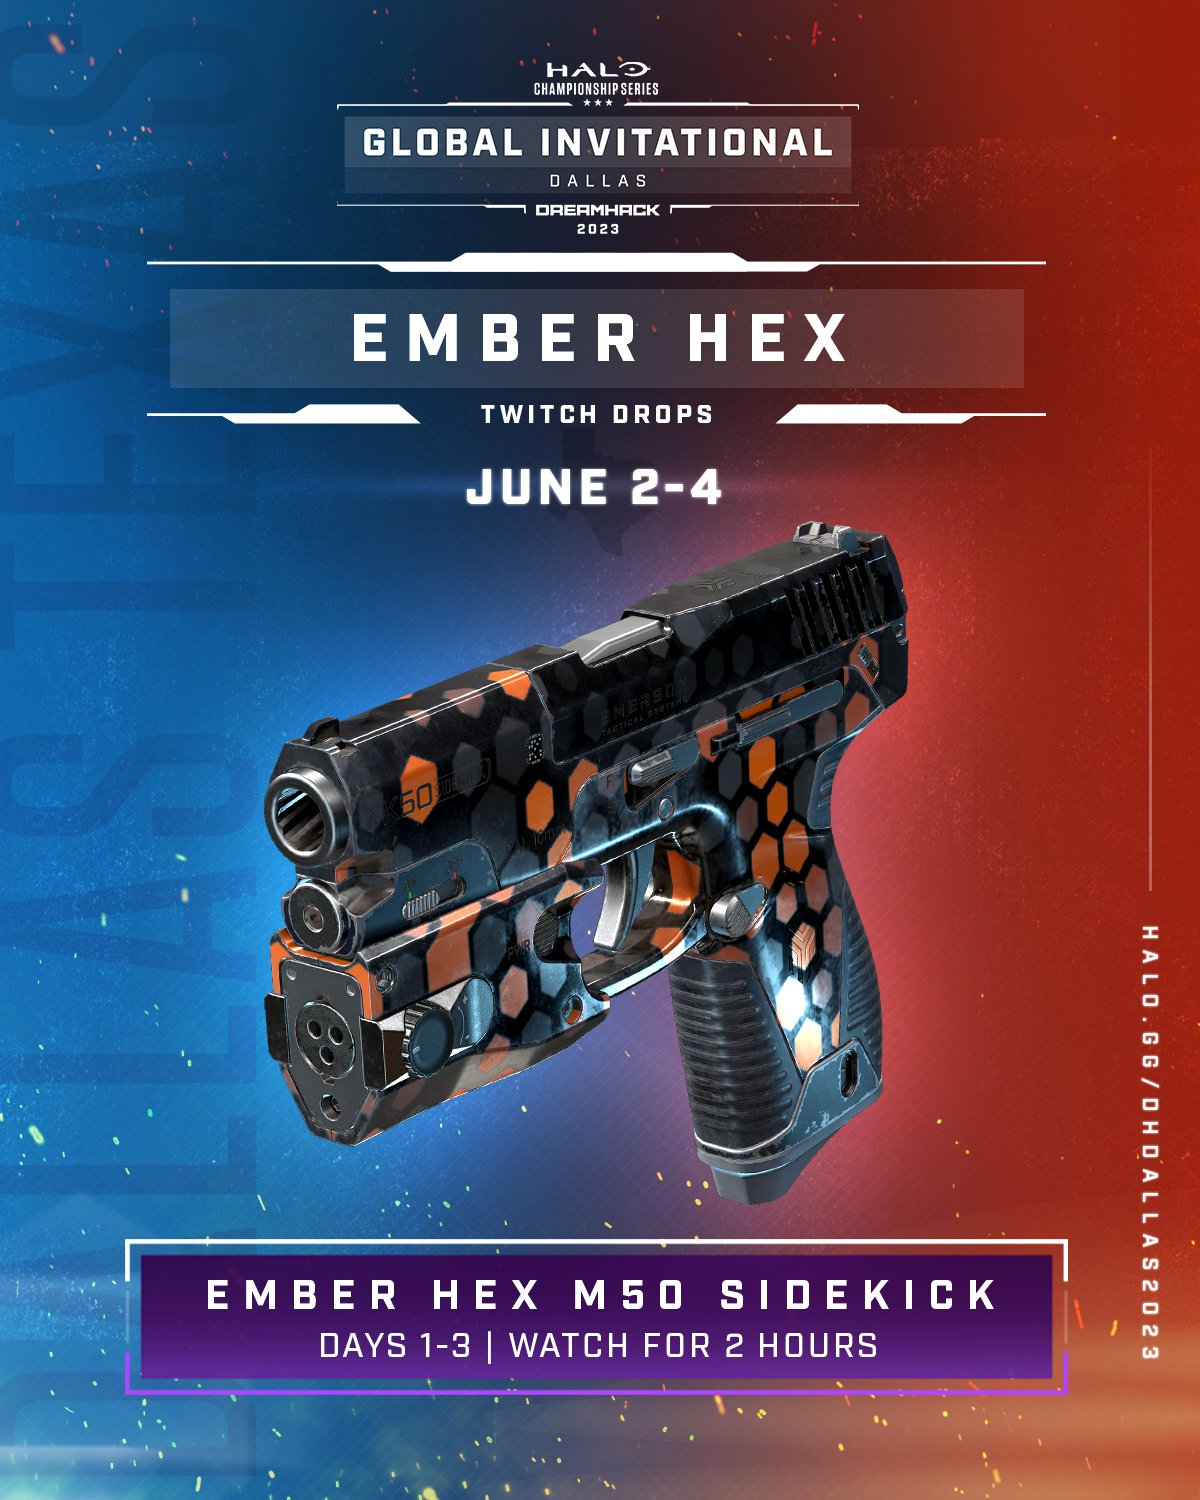 Skin d'armes Ember Hex: du contenu gratuit à débloquer pendant les HCS Dallas 2023